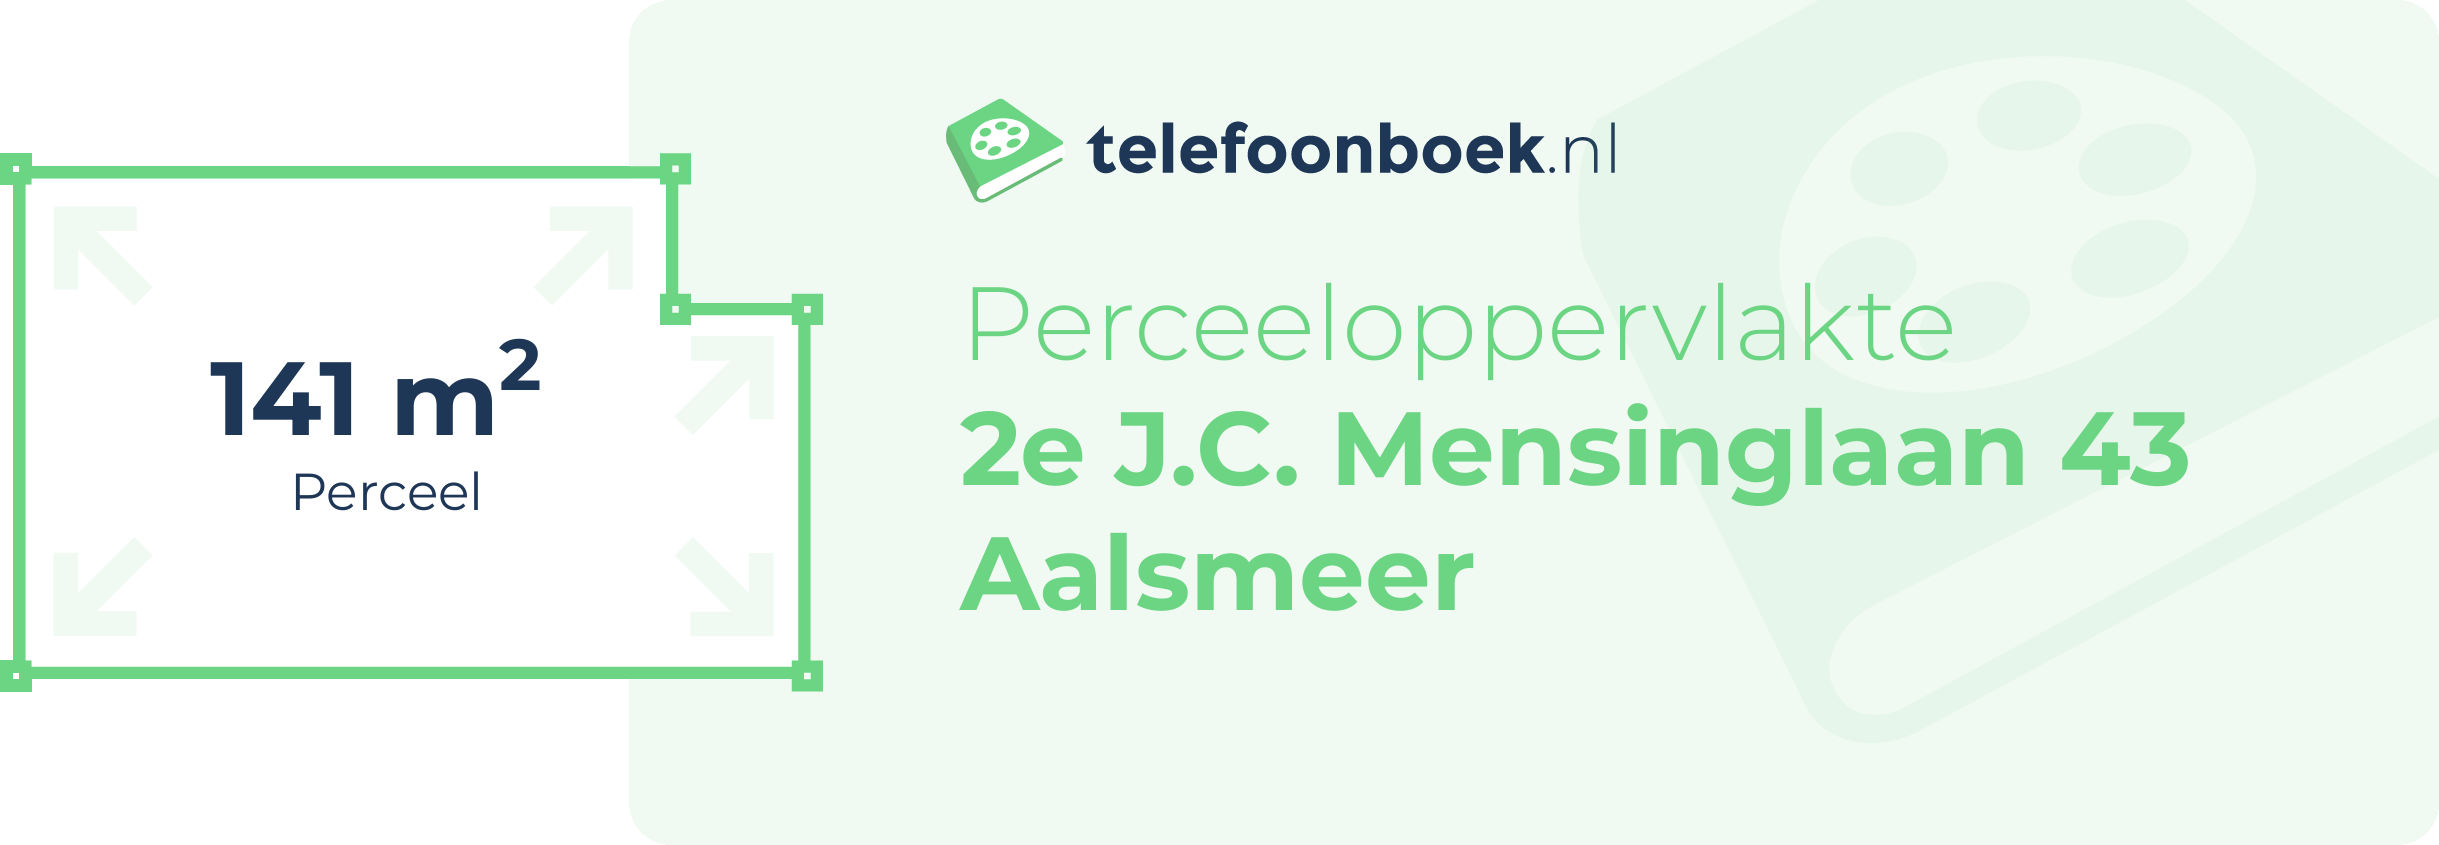 Perceeloppervlakte 2e J.C. Mensinglaan 43 Aalsmeer